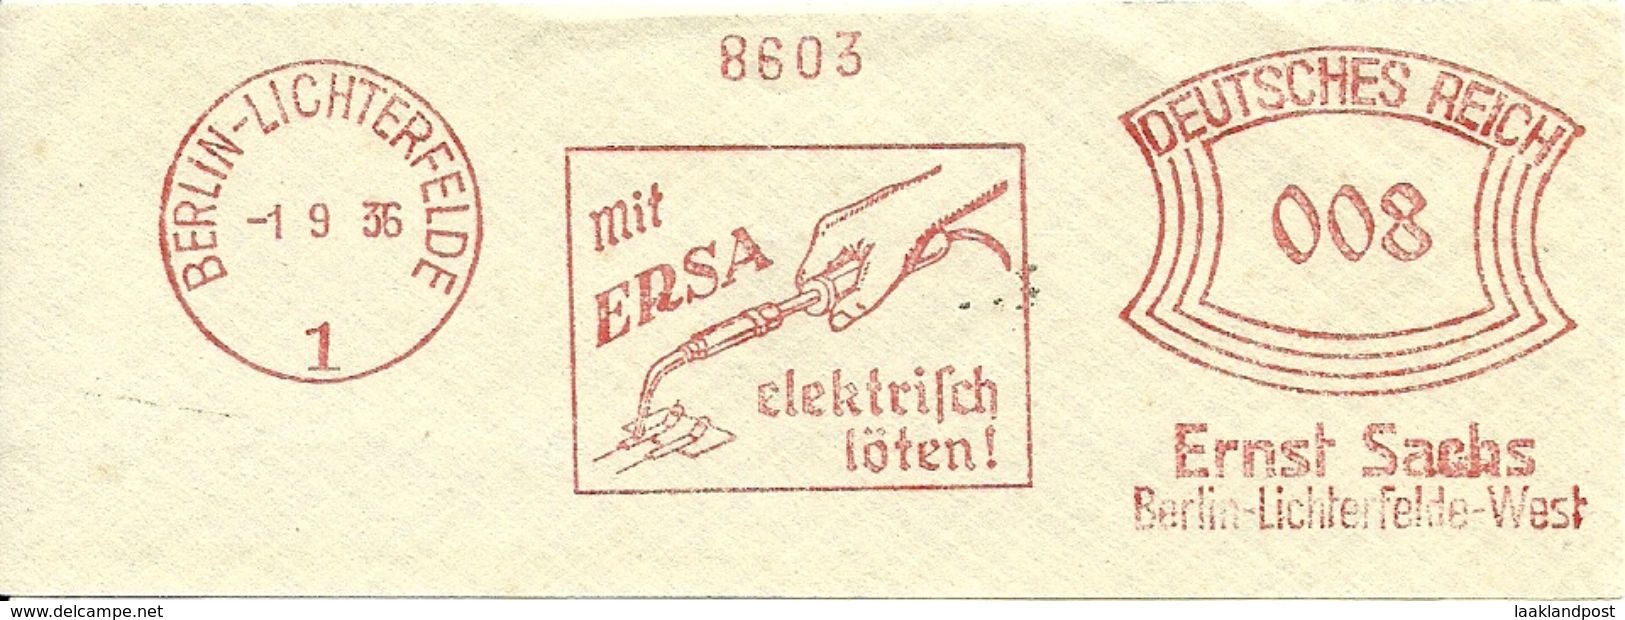 Germany Nice Cut Meter Mit ERSA Electric Welding Berlin-Lichterfelde 1/9/1935 - Fabrieken En Industrieën